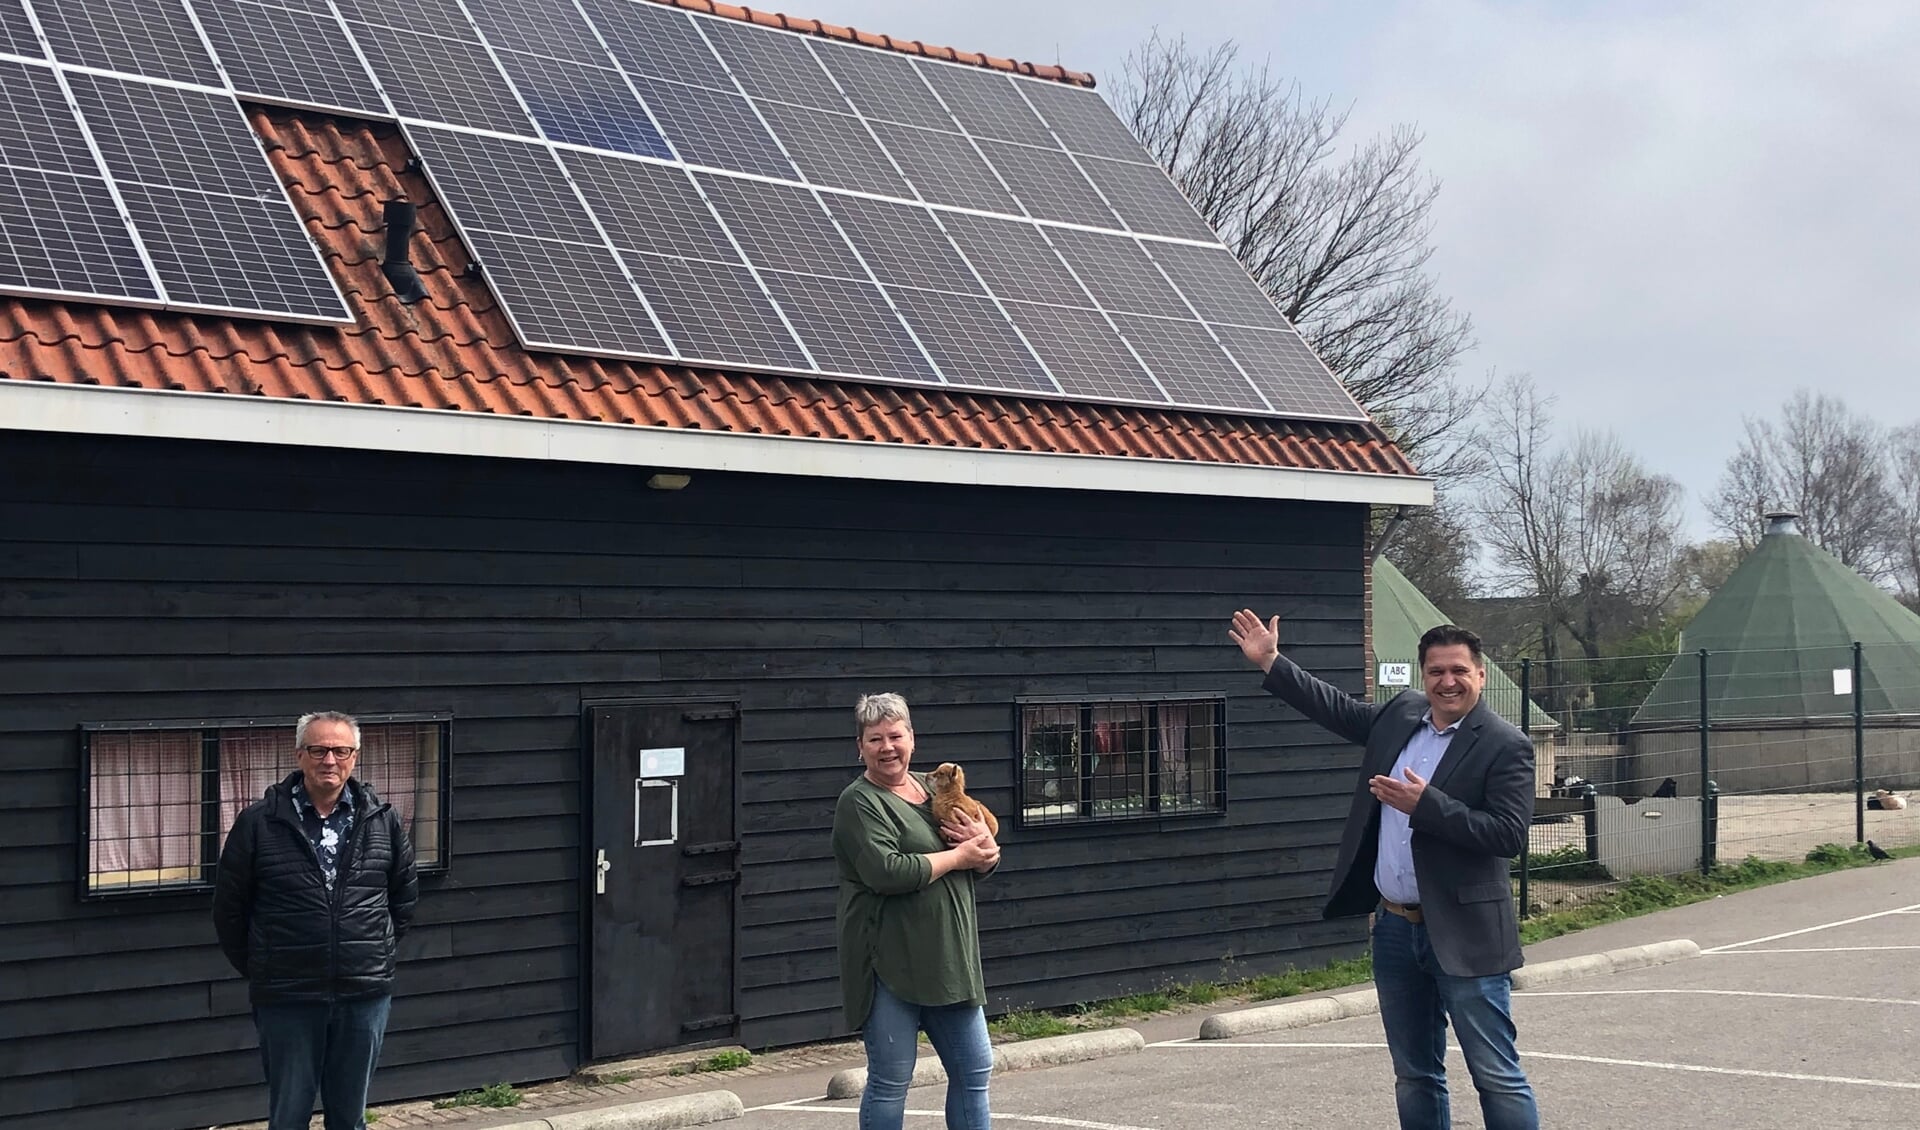 Richard Venneker van Bakker Bouw Solar Solutions  “Vroeger kwam ik hier vaak met de kinderen en nu mocht ik er zonnepanelen installeren.”  